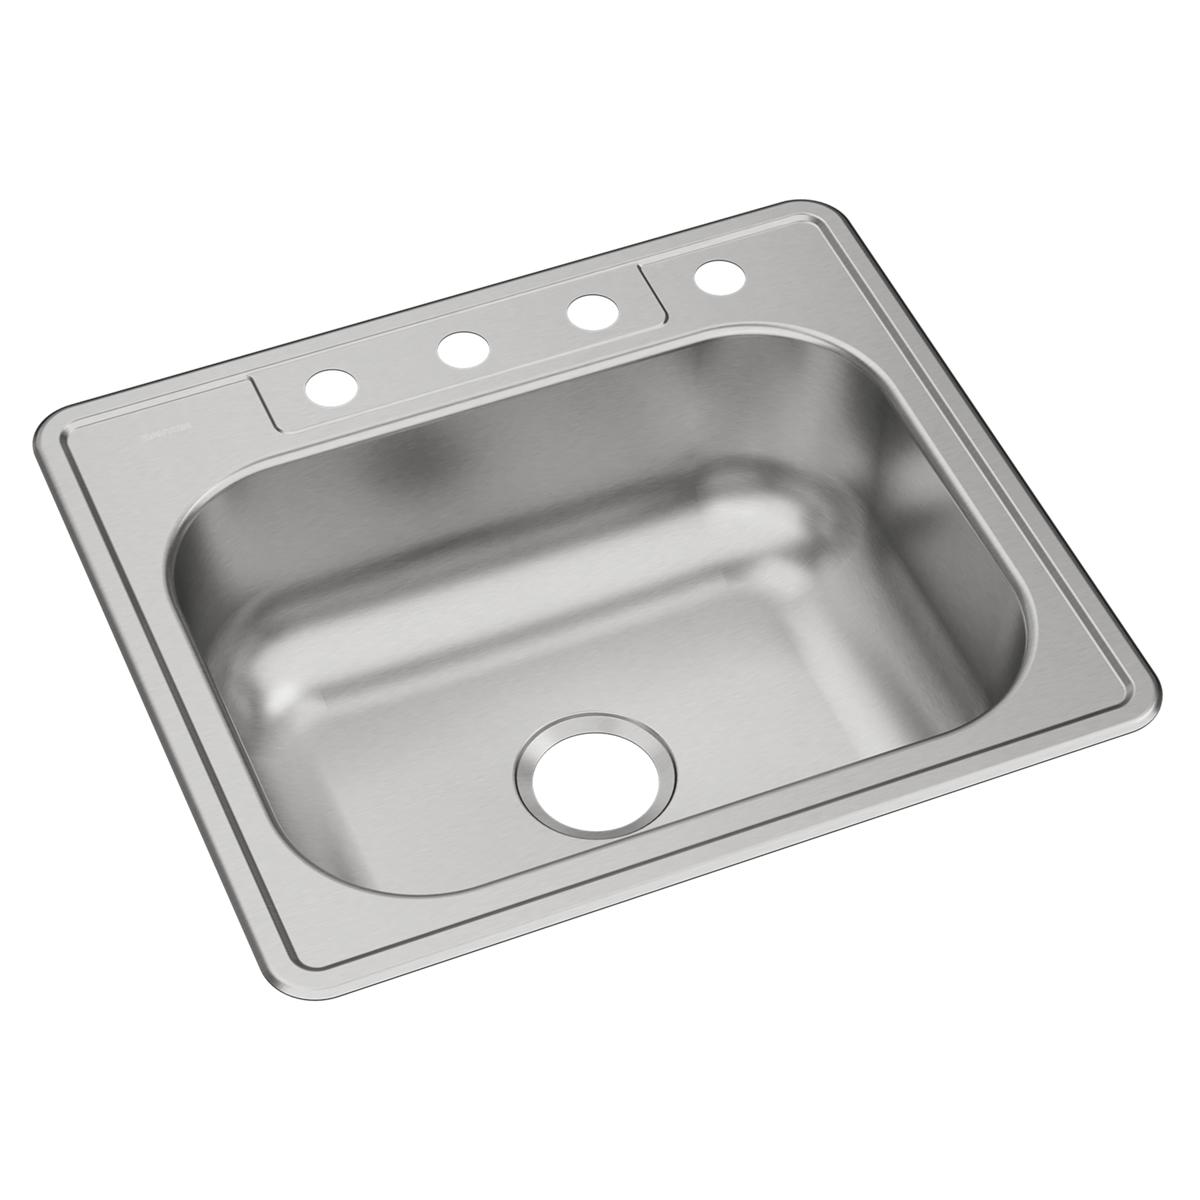 Elkay Dayton Stainless Steel 25" x 22" x 8-1/16", 4-Hole Single Bowl Drop-in Sink